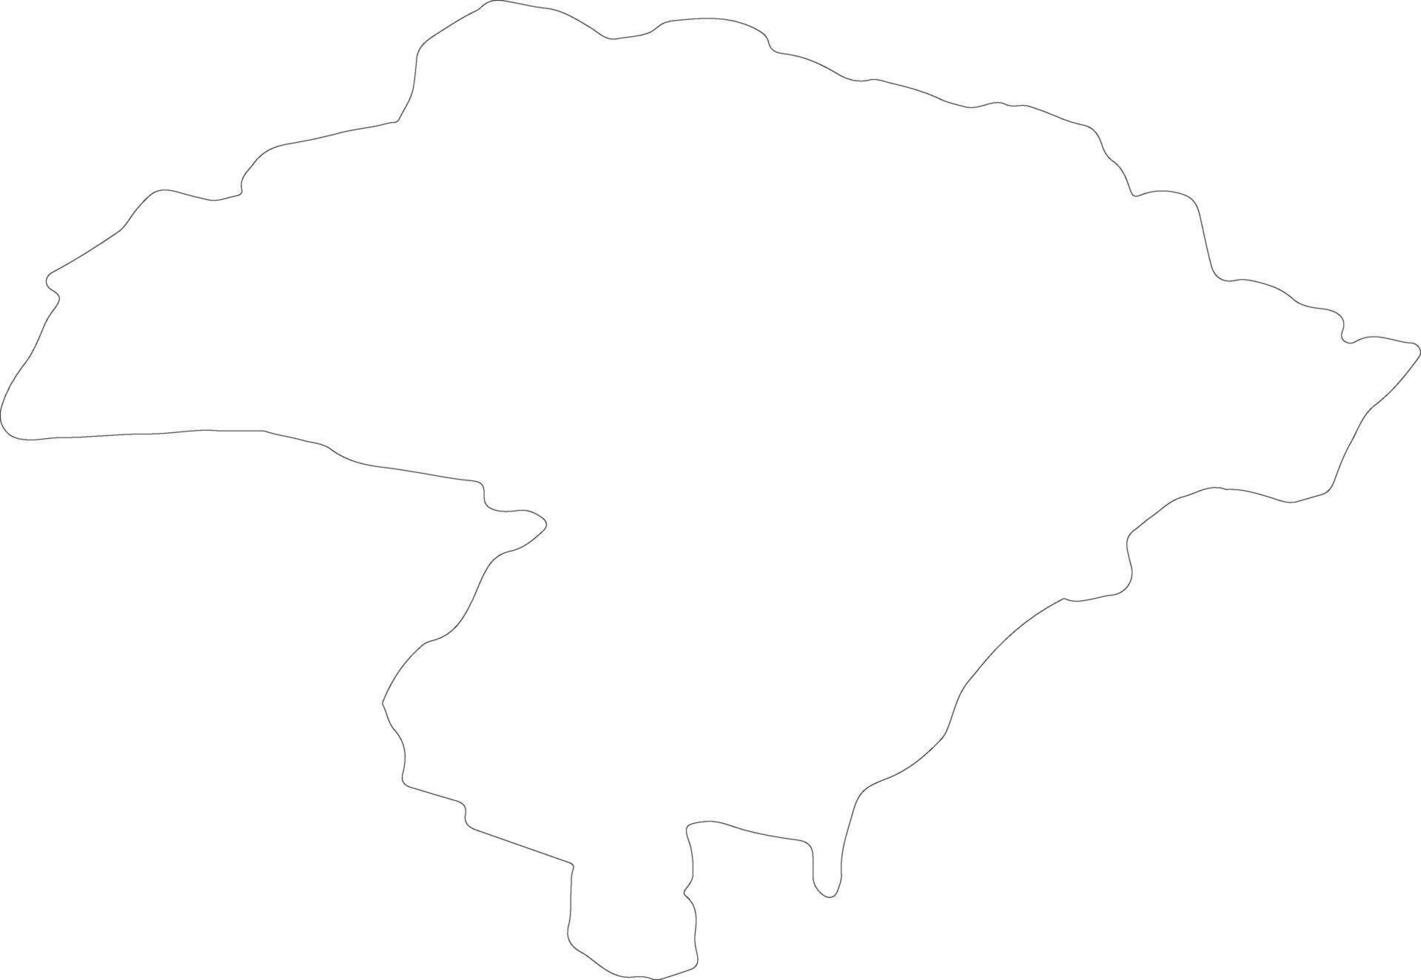 iringa förenad republik av tanzania översikt Karta vektor